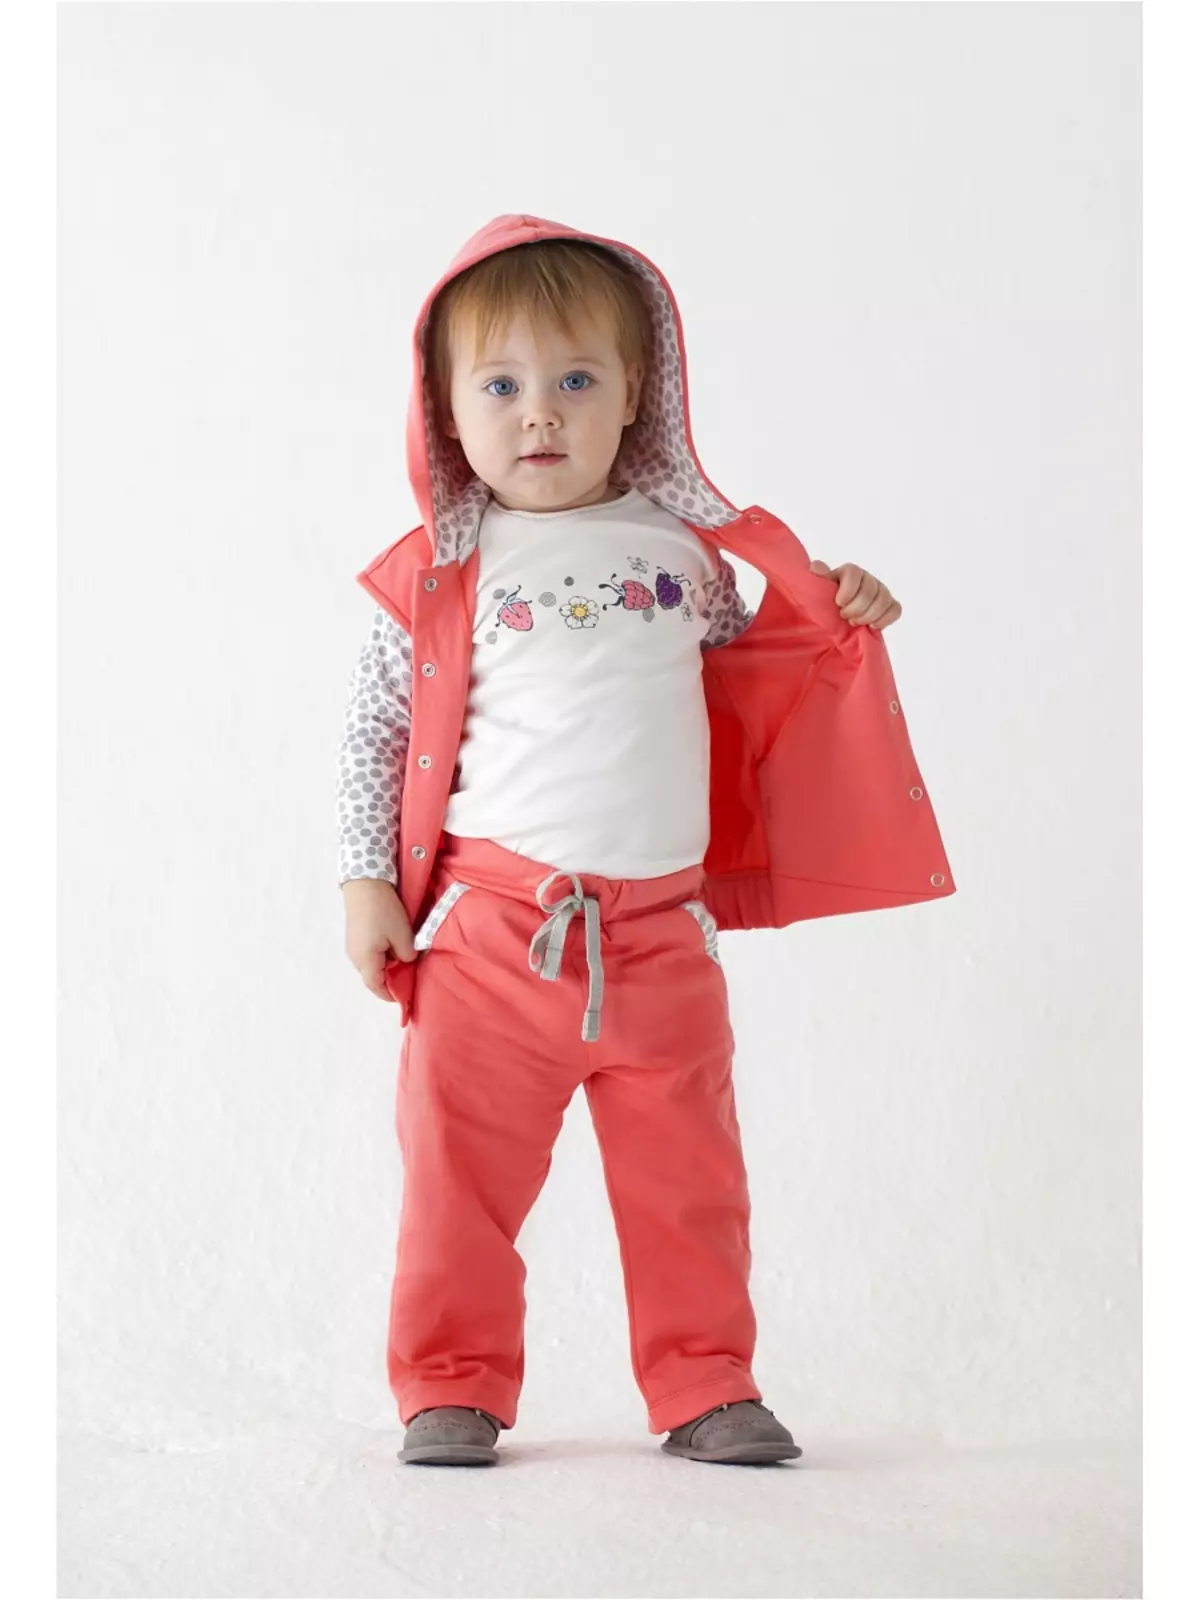 Мамуляндія (62 фото): дитячий одяг, боді і жилети для новонароджених, відгуки про дизайнерських речах популярної фабрики 3900_4